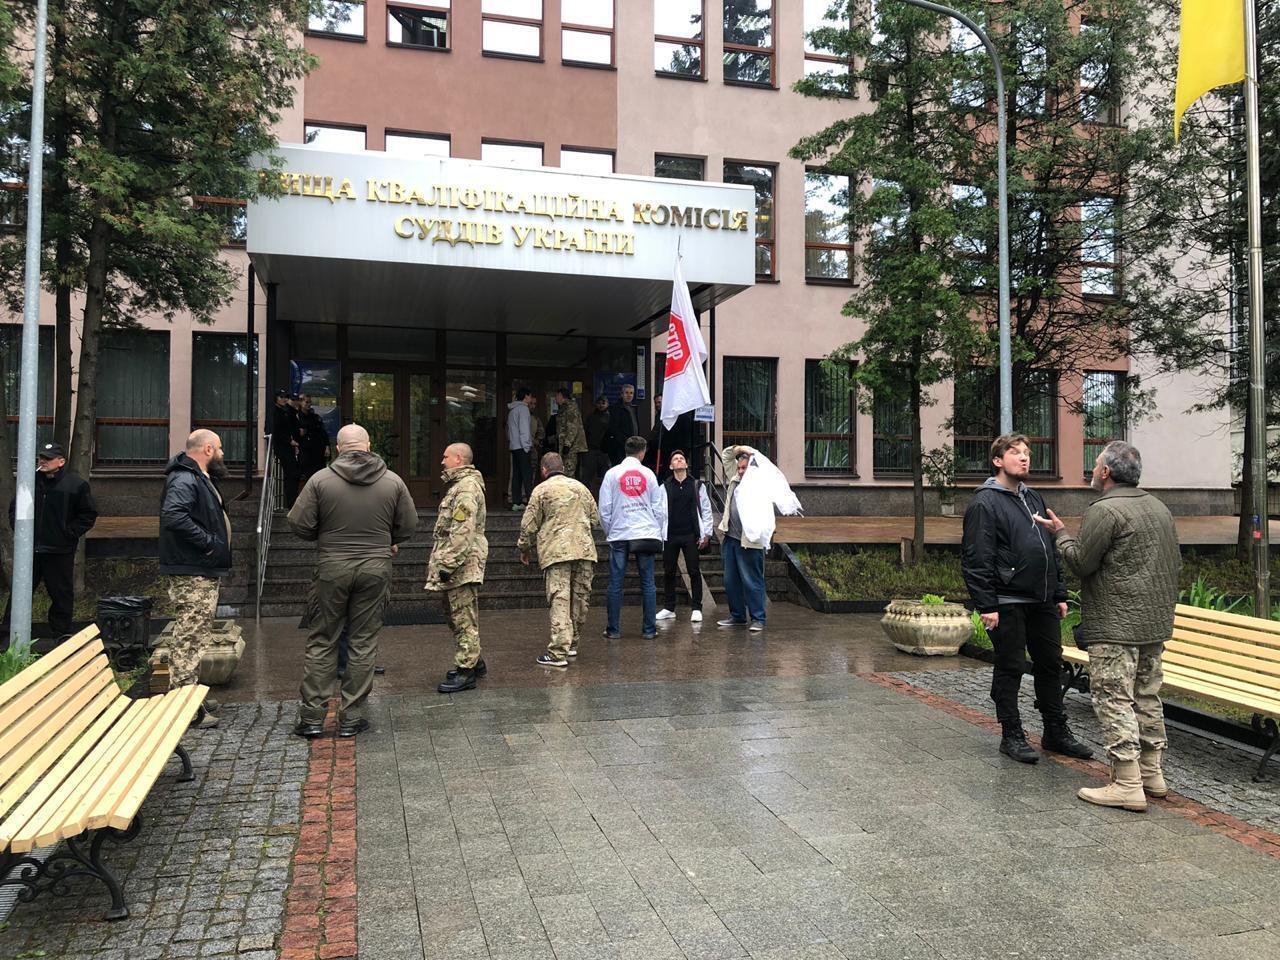 Звільнити не можна залишити: під ВККСУ акція протесту через суддю Коваленка